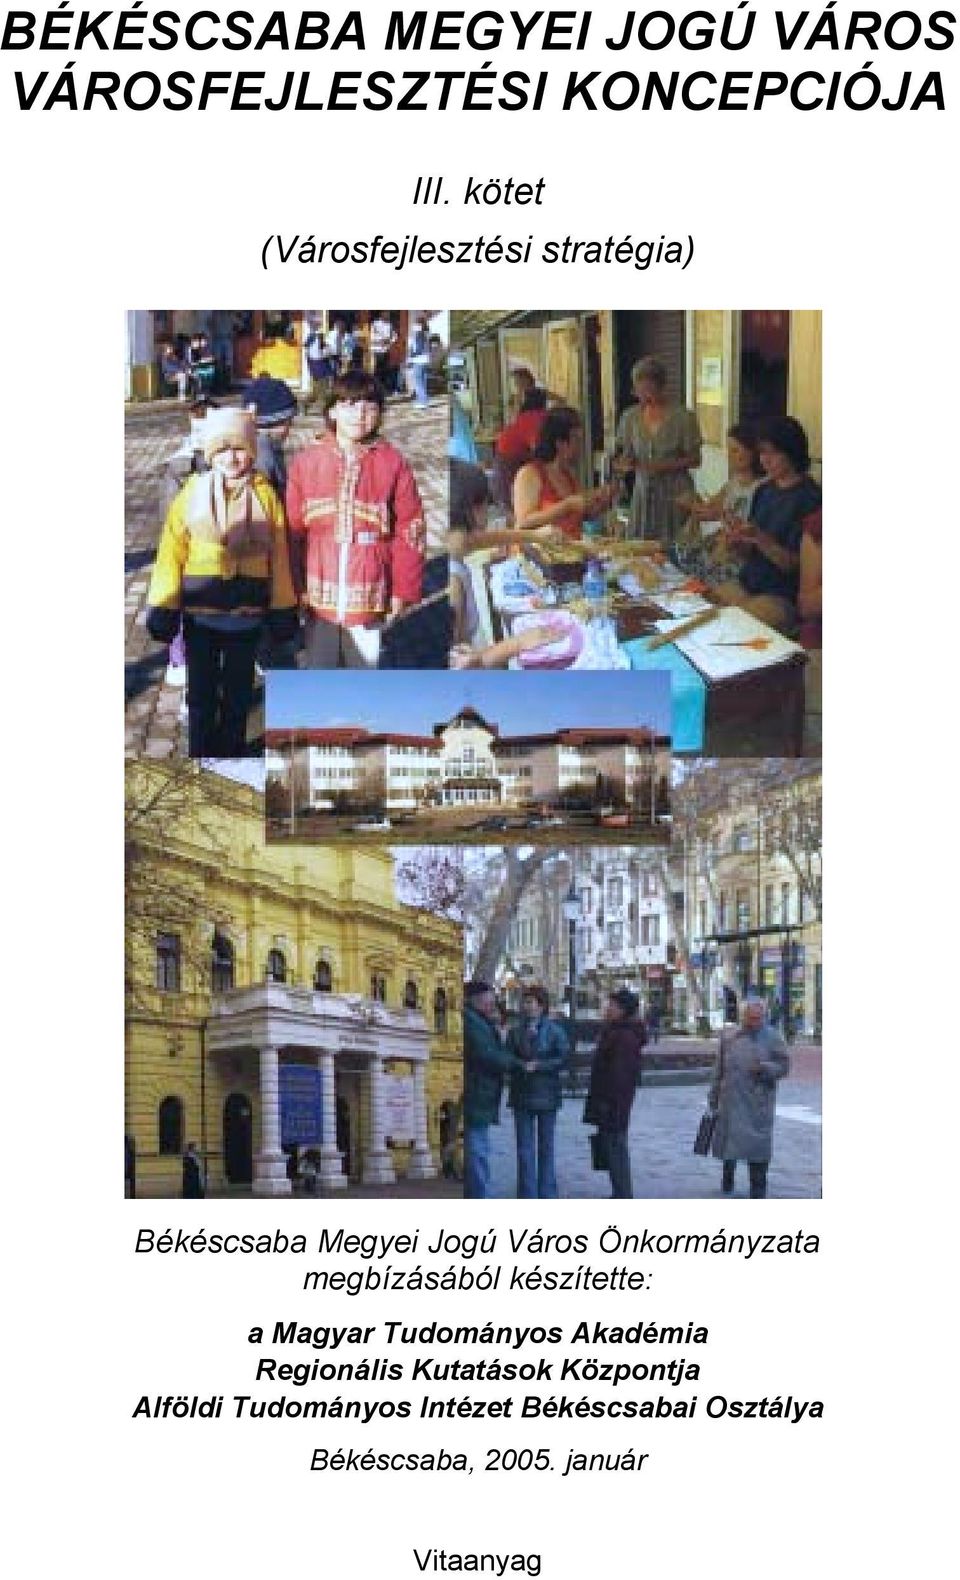 Önkormányzata megbízásából készítette: a Magyar Tudományos Akadémia